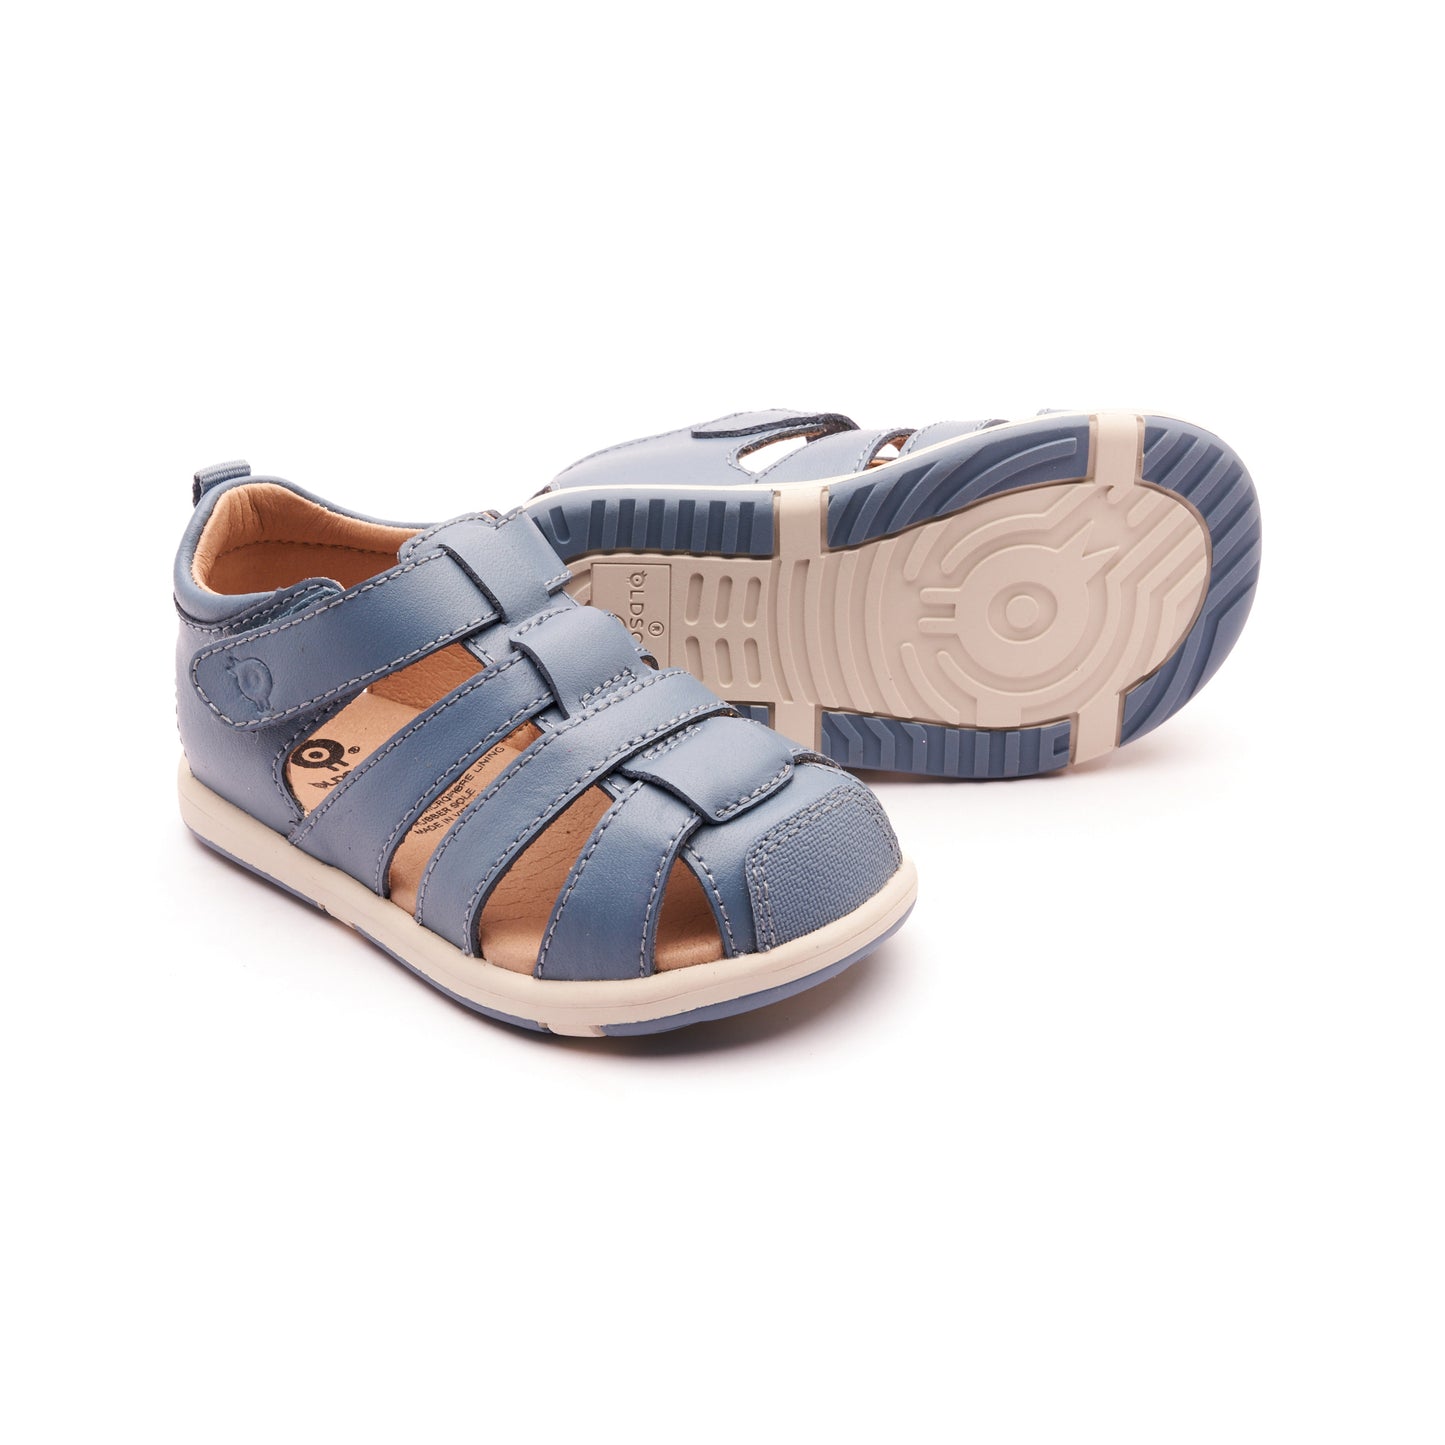 Old Soles Surf Sandal Indigo Blue Sandals